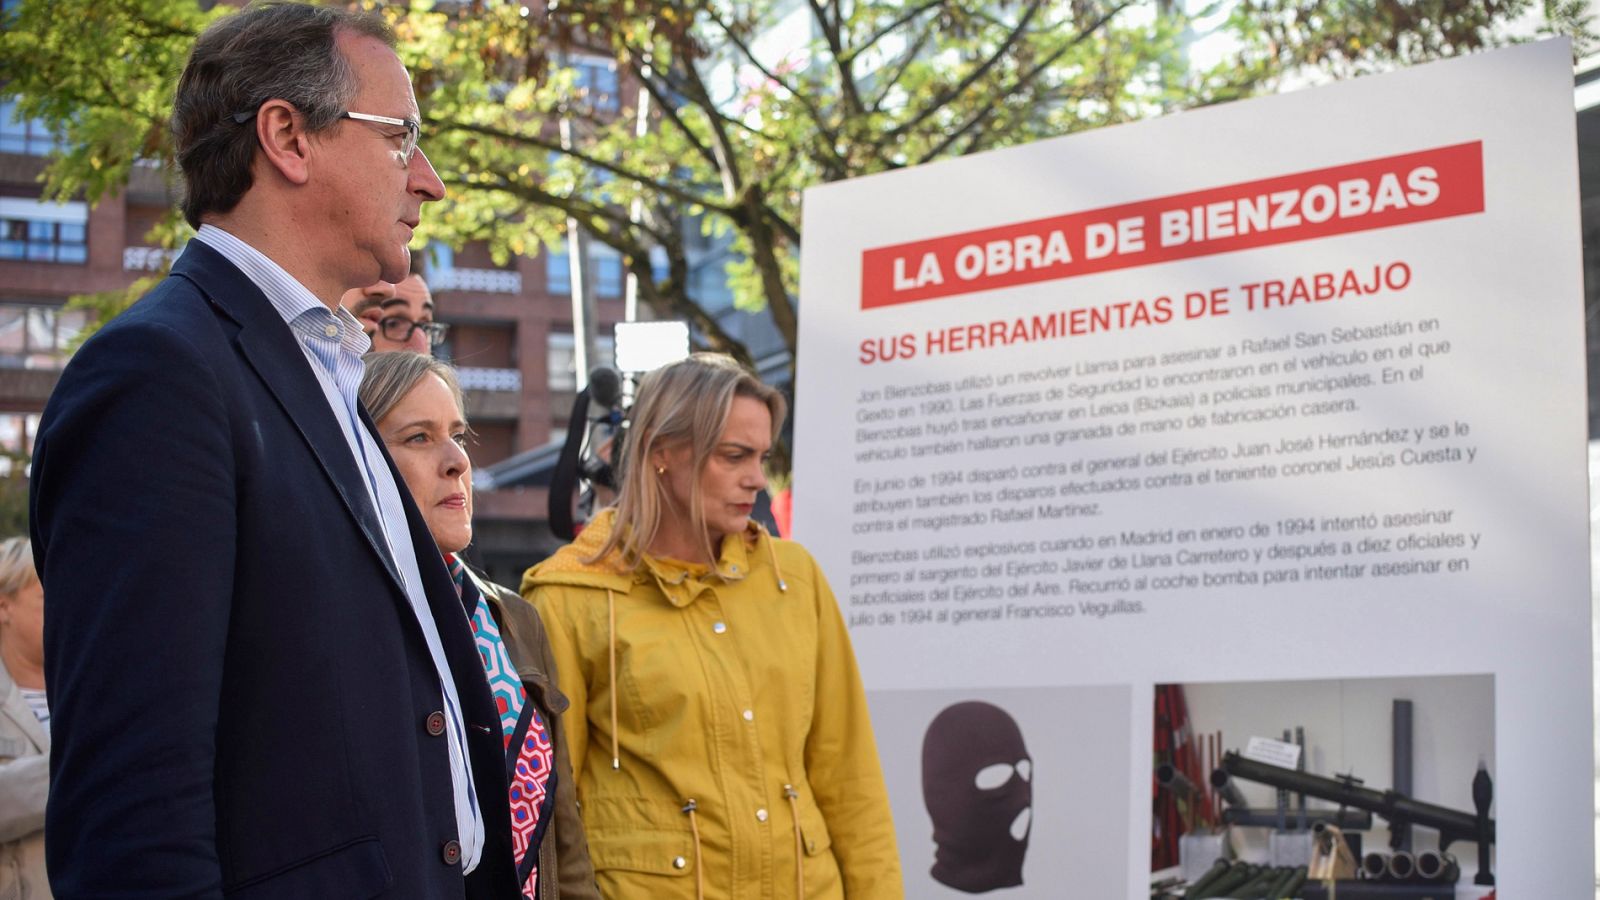 El PP vasco y asociaciones de víctimas piden la suspensión de la exposición del etarra Bienzobas